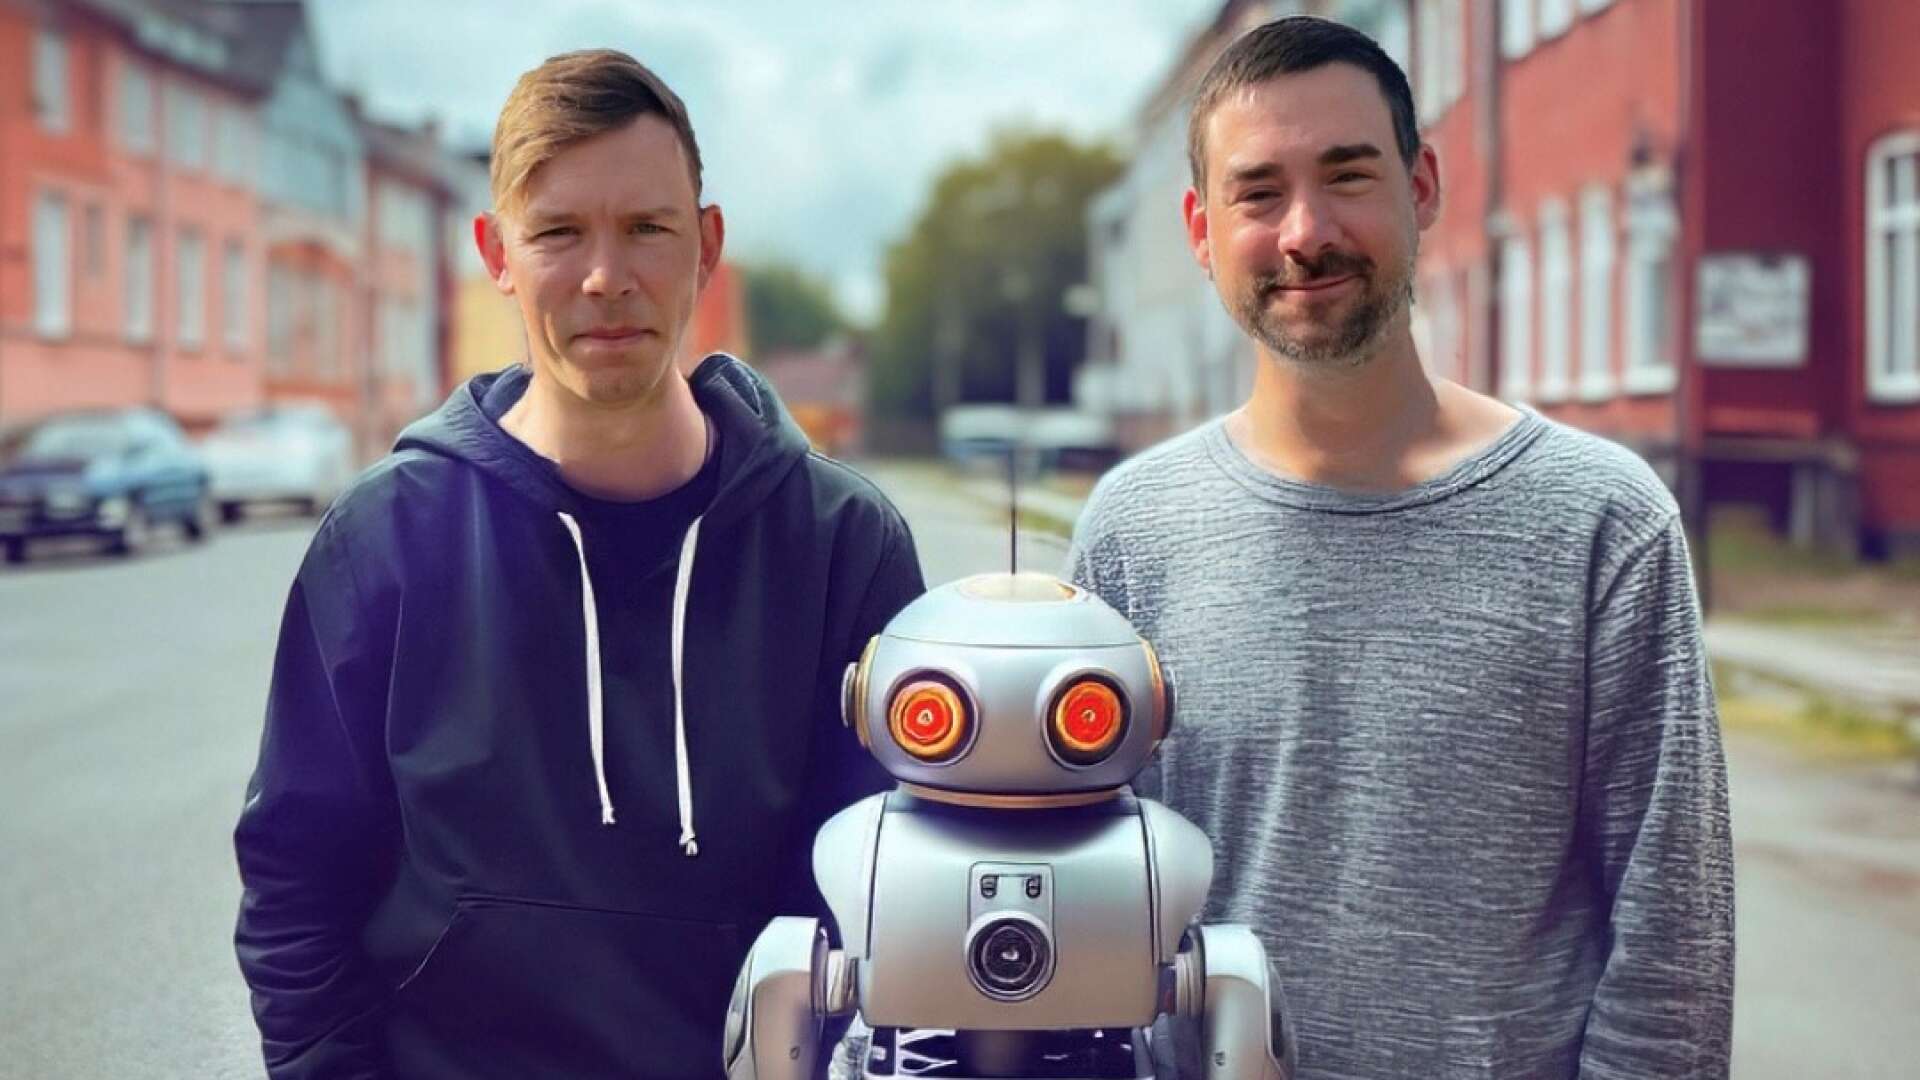 Niklas Brandin och Tobias Söderman är bröderna bakom podden Magiska godnattsagor. Barn skickar in förslag på sagor, AI-roboten Aida skapar dem och bröderna läser in dem. 